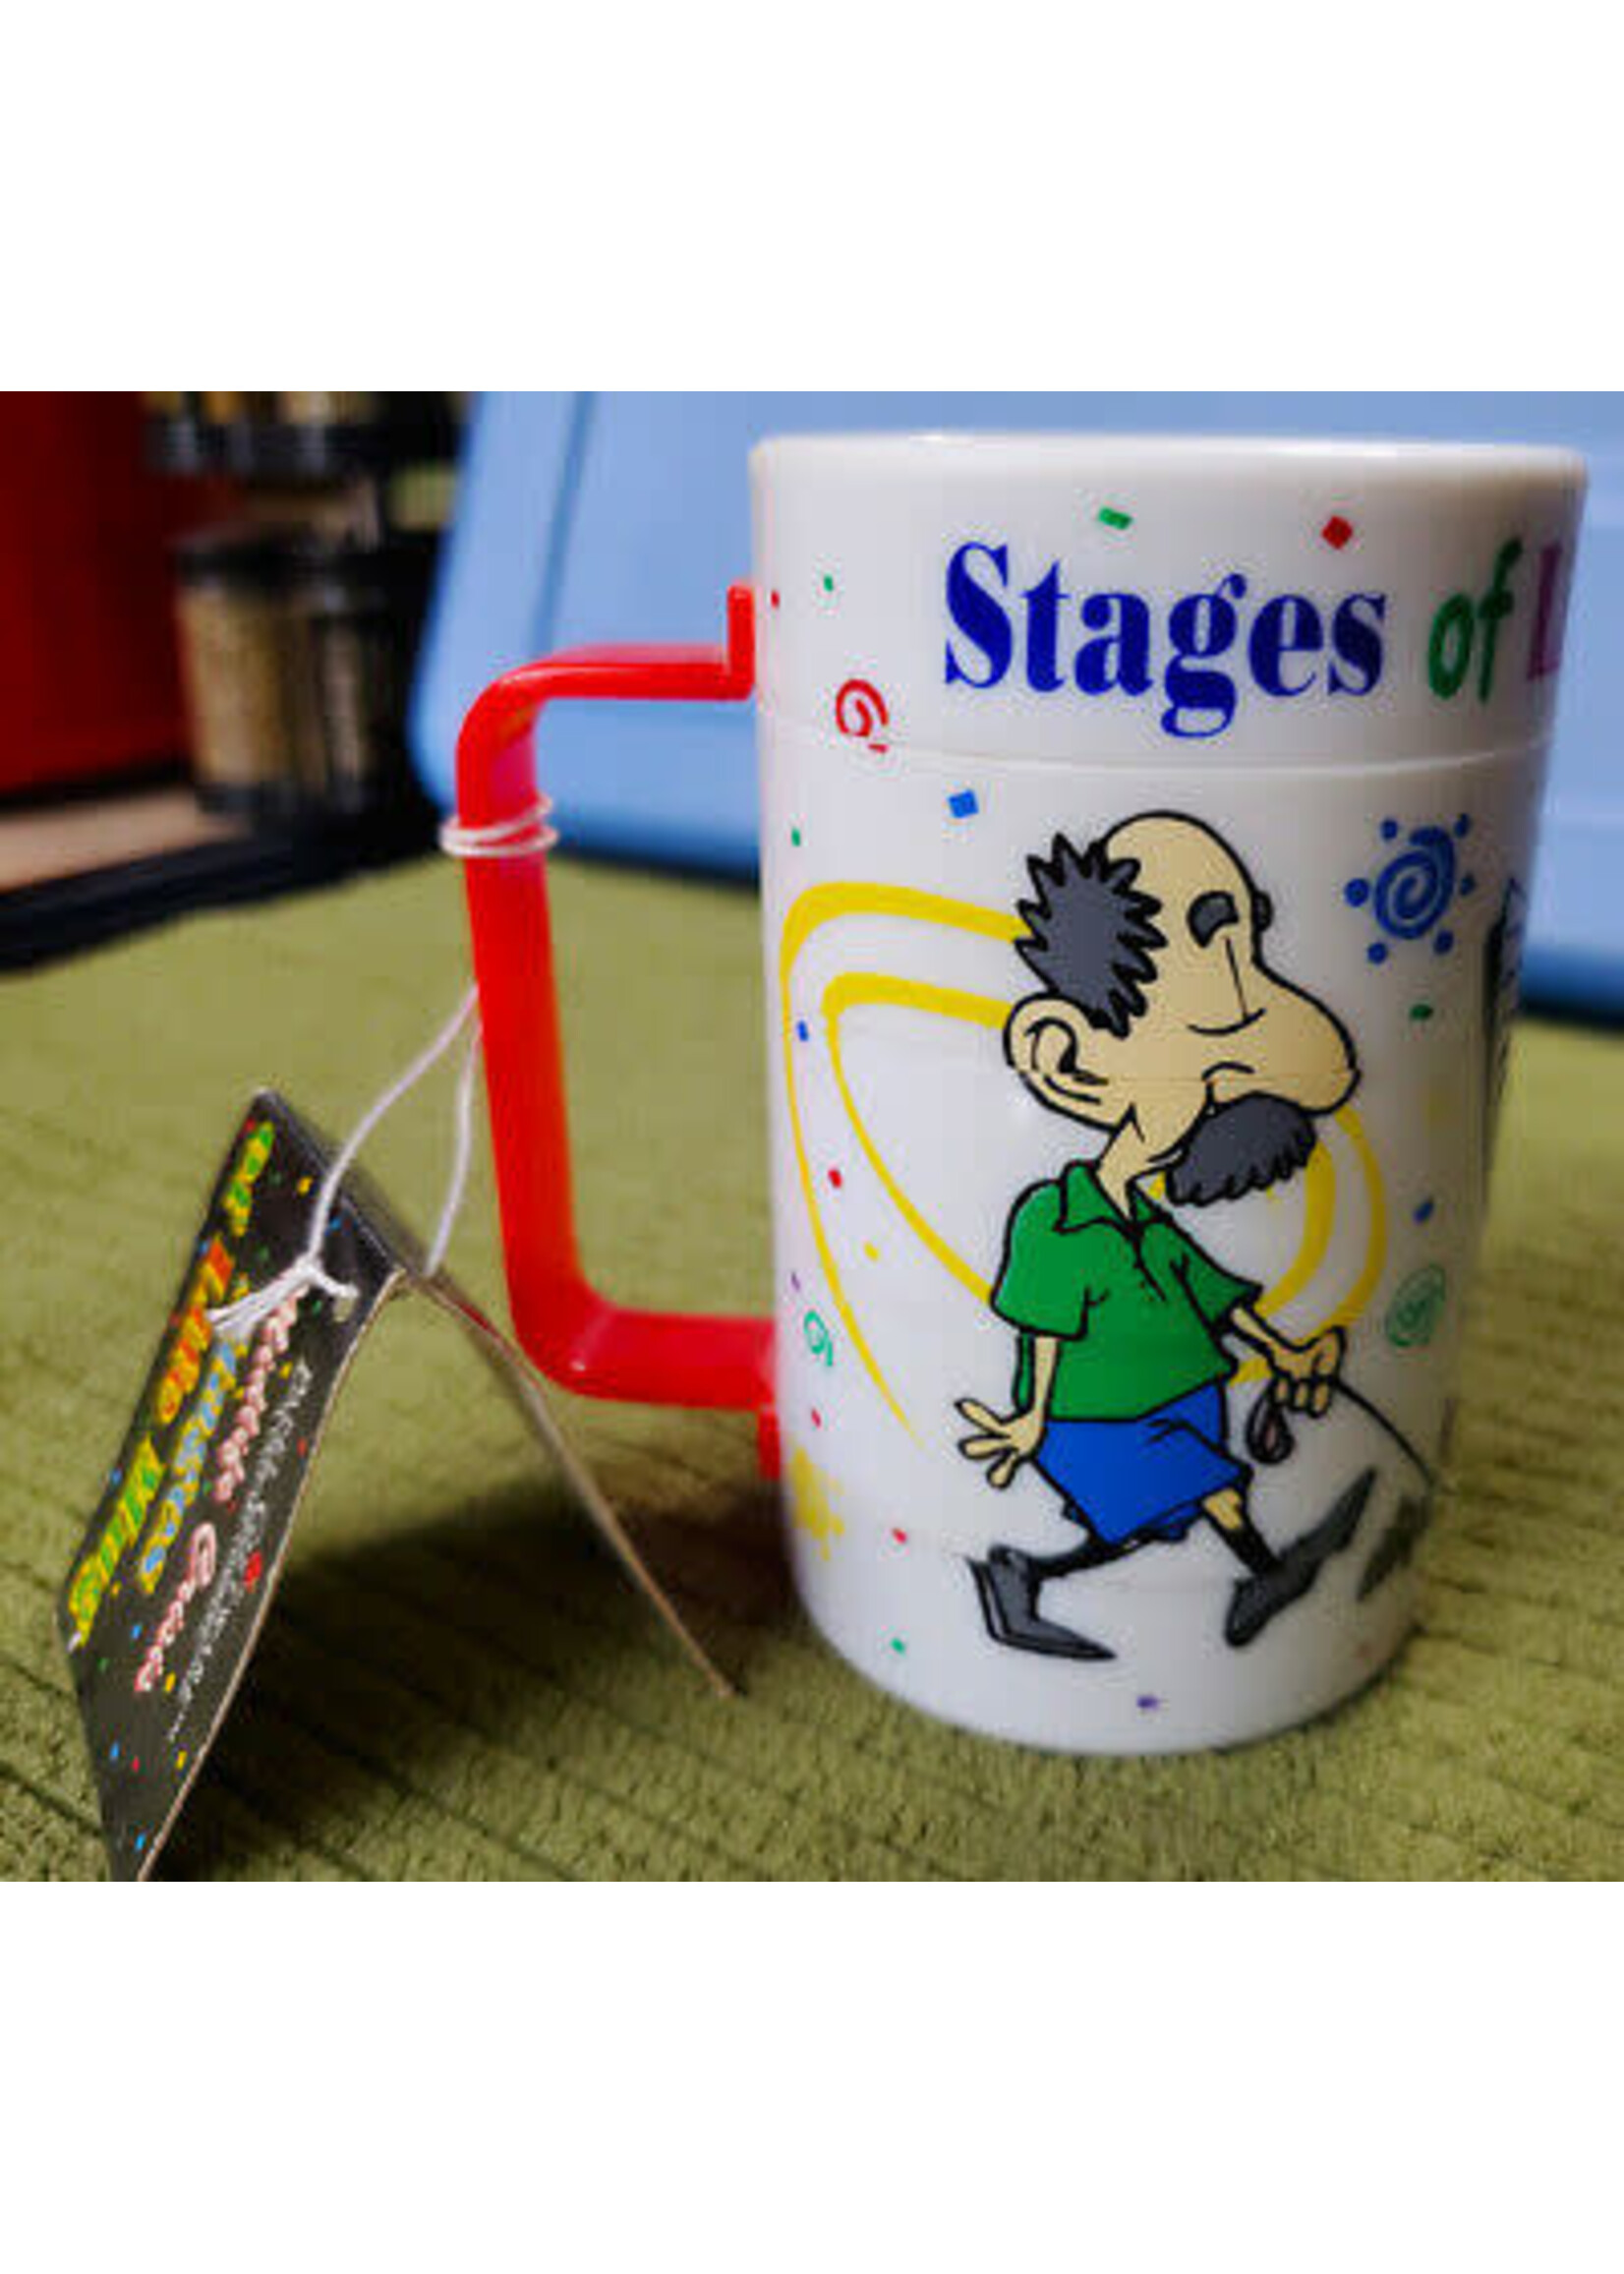 Stages of Life GAG Mug